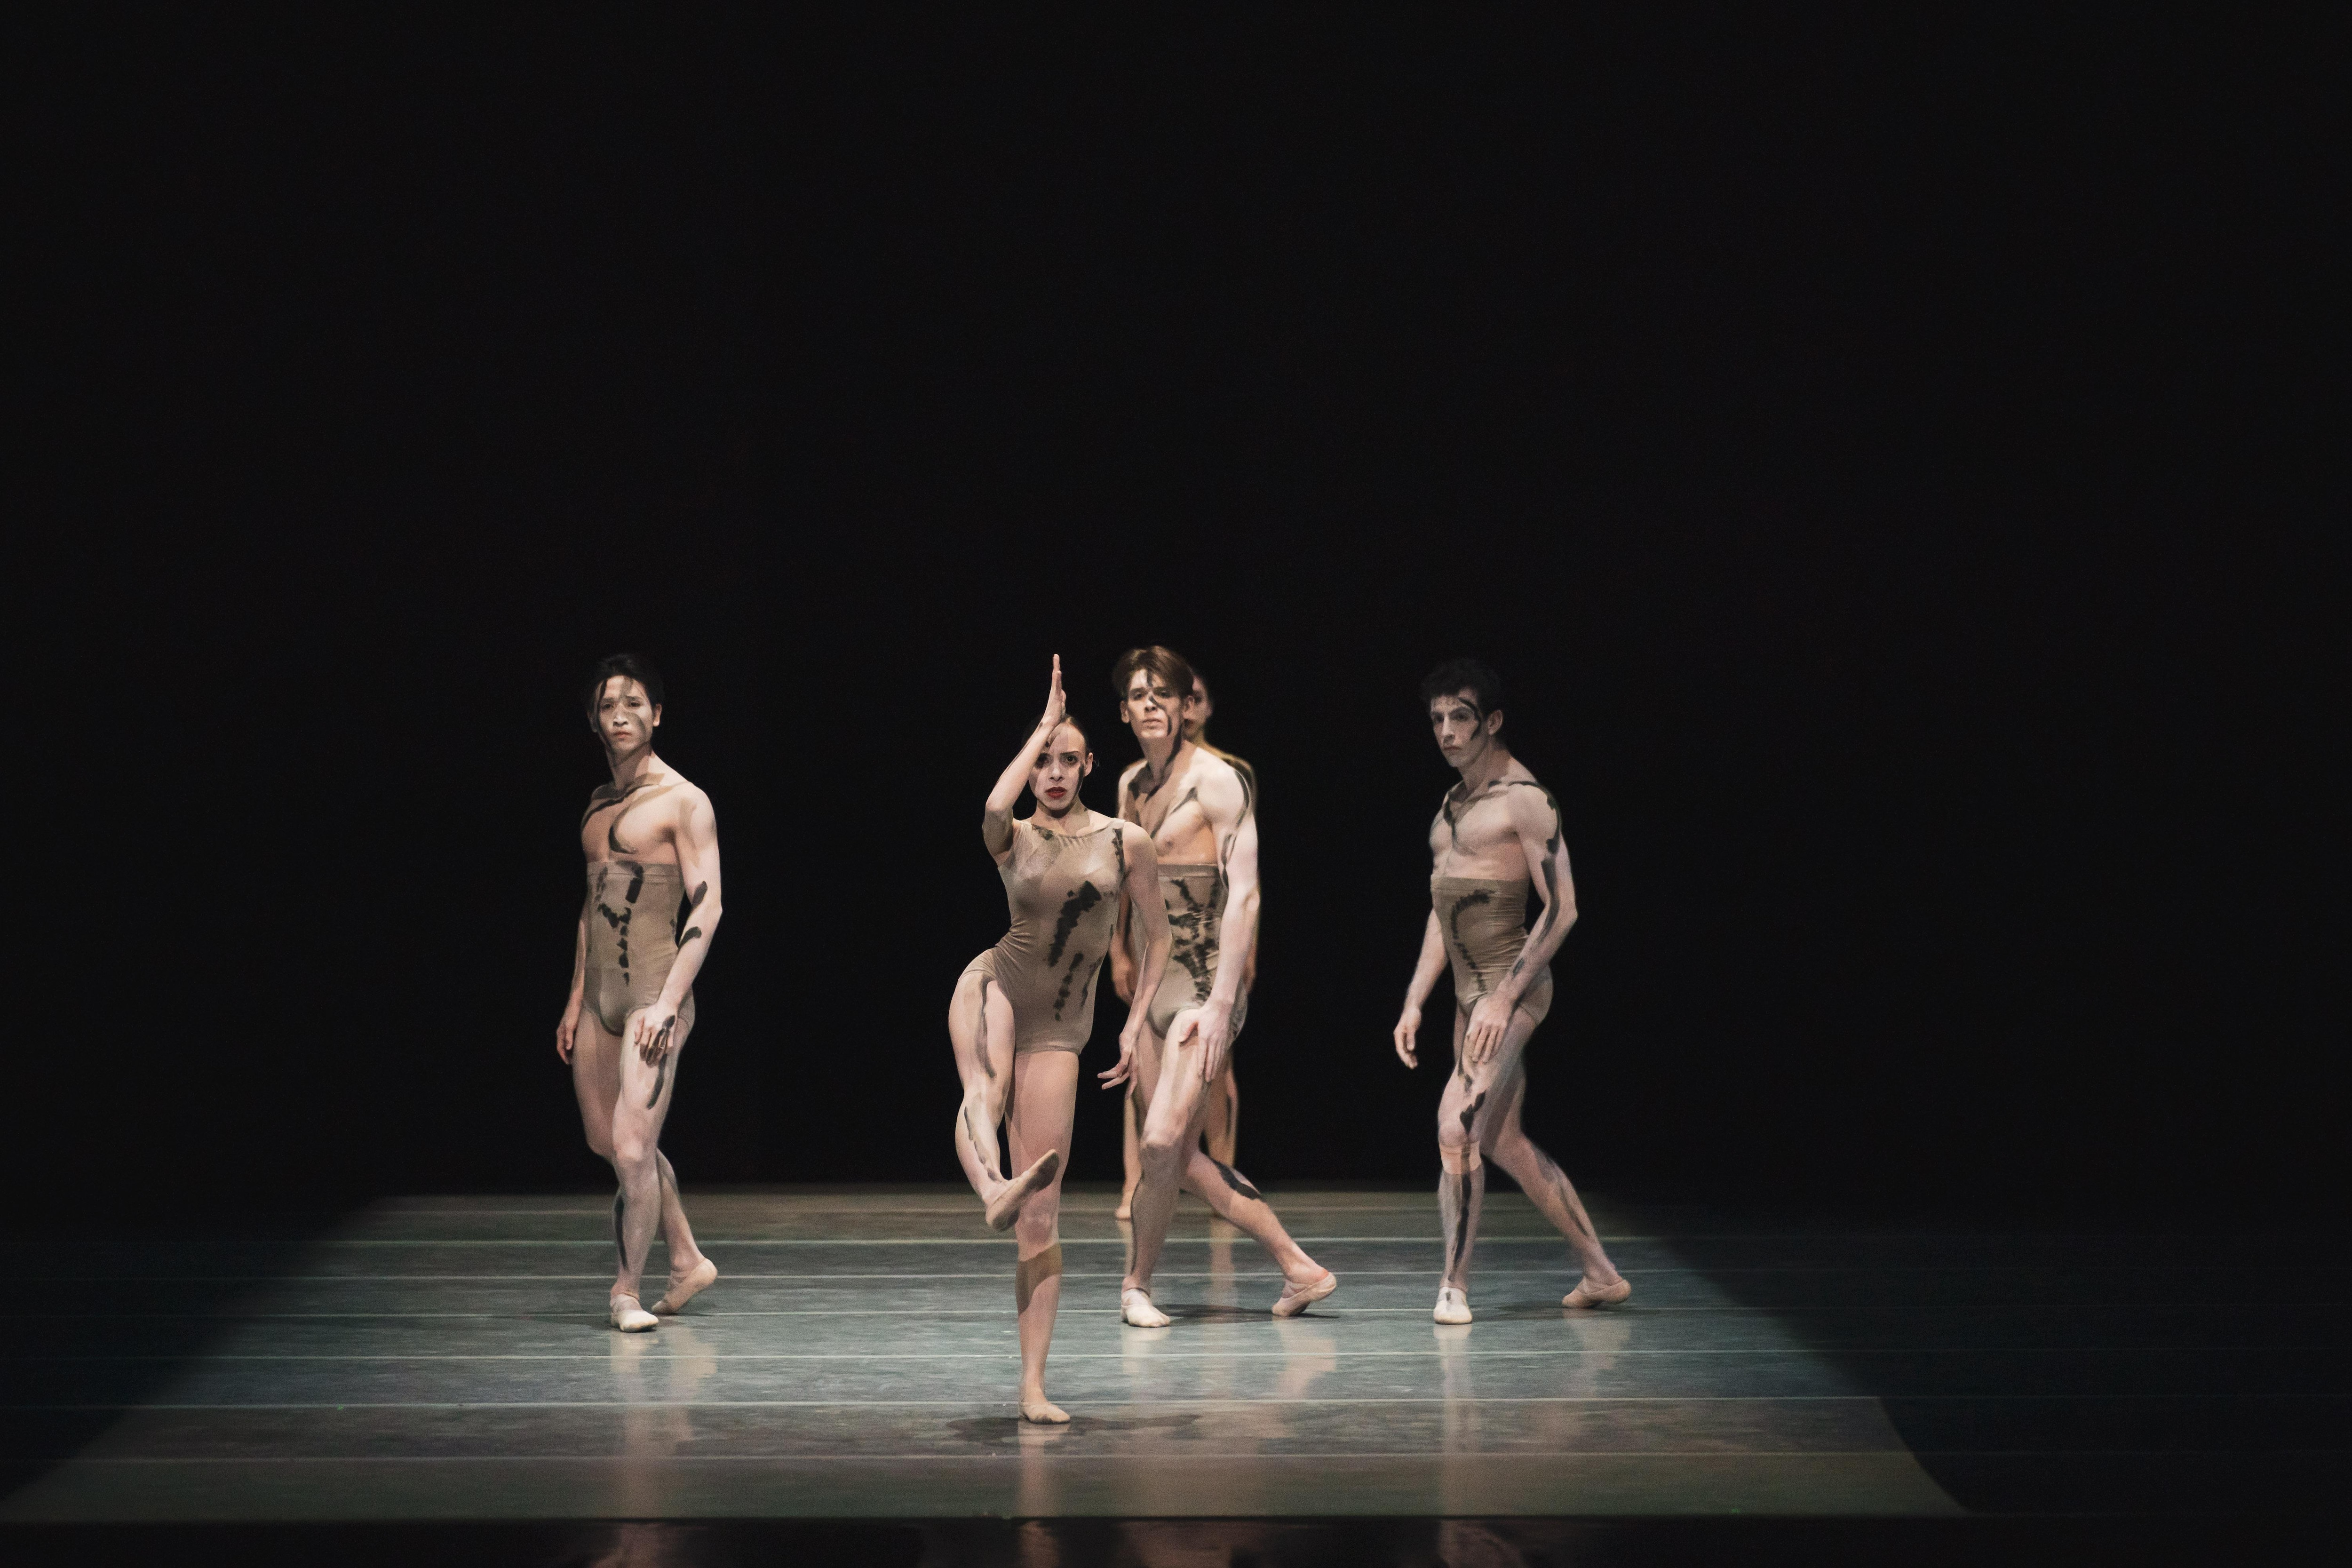 由Sol León和Paul Lightfoot创作的《Sad Case》中表演的波尔多芭蕾舞团（Ballet de Bordeaux）。